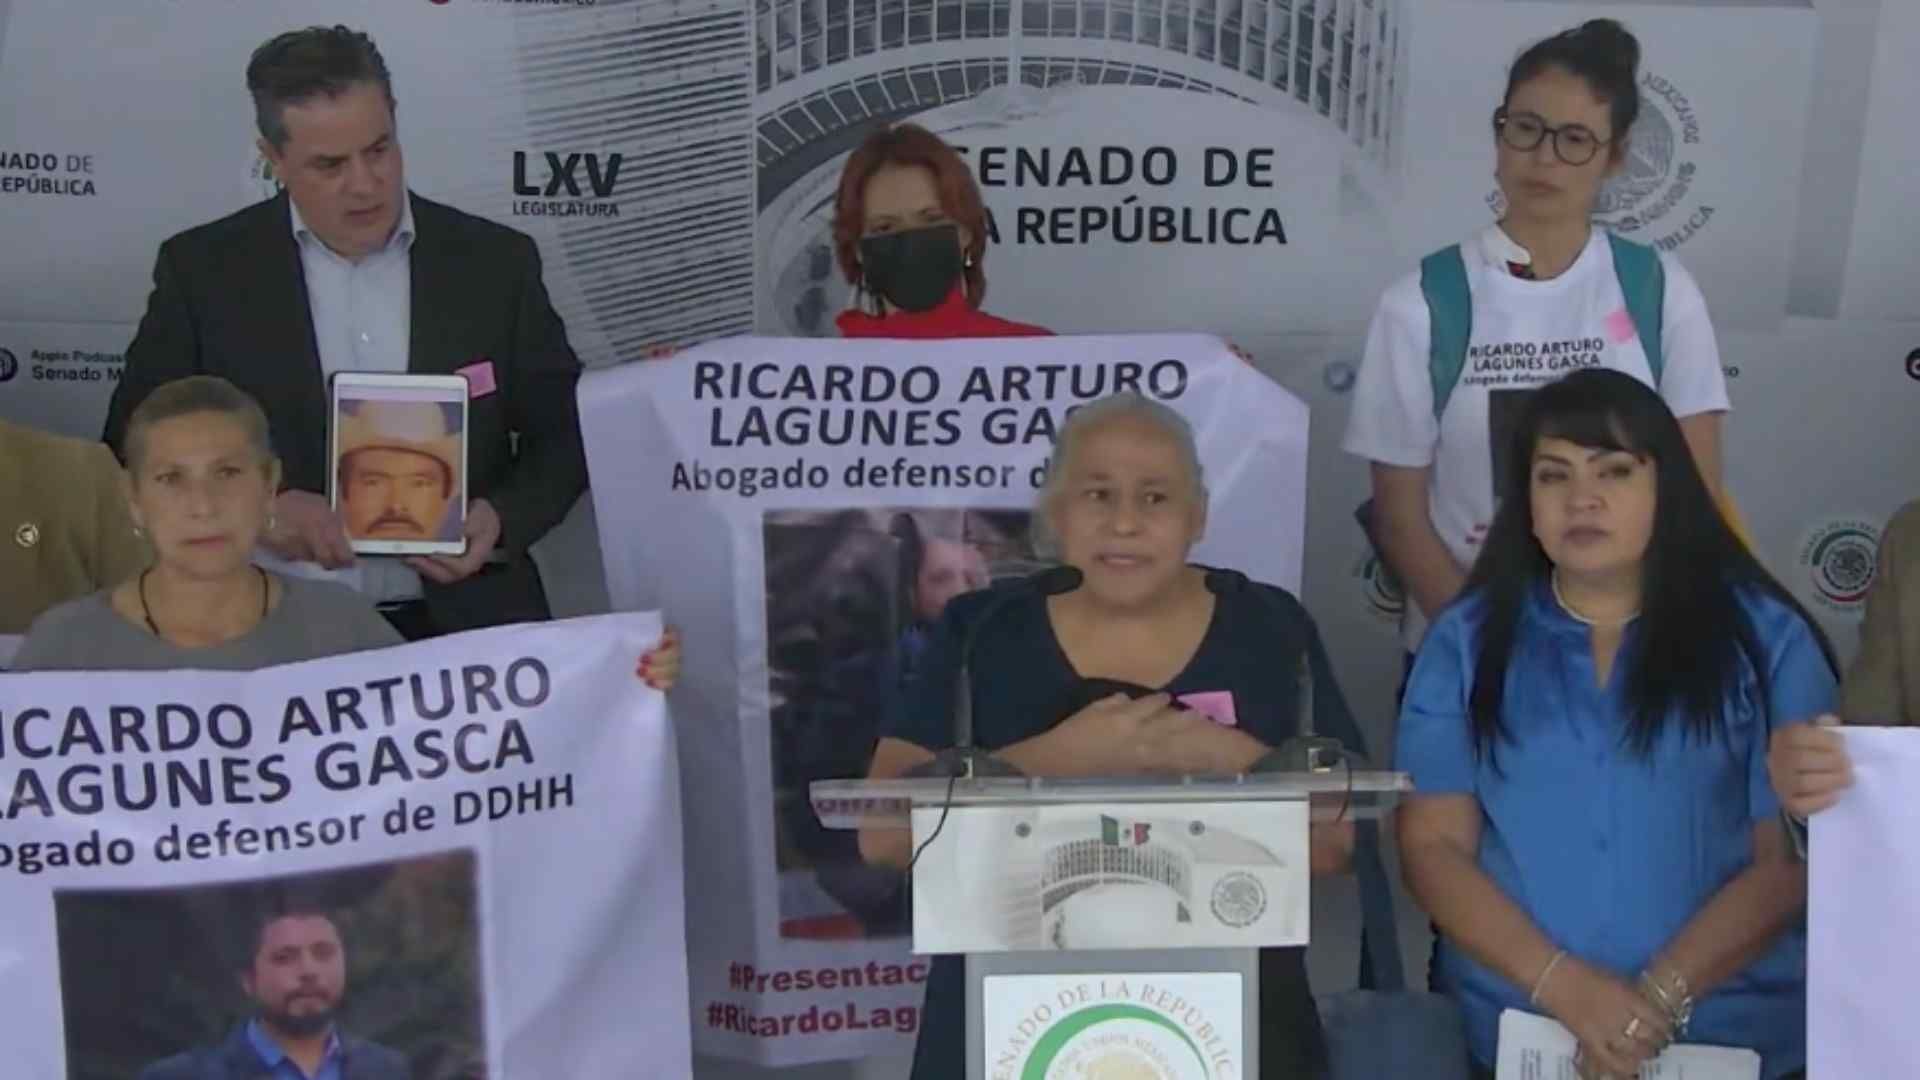 Ana Lucía Gasca, madre de Ricardo Arturo Lagunes Gasca, llamó a las autoridades a que agilicen la búsqueda de su hijo y de Antonio